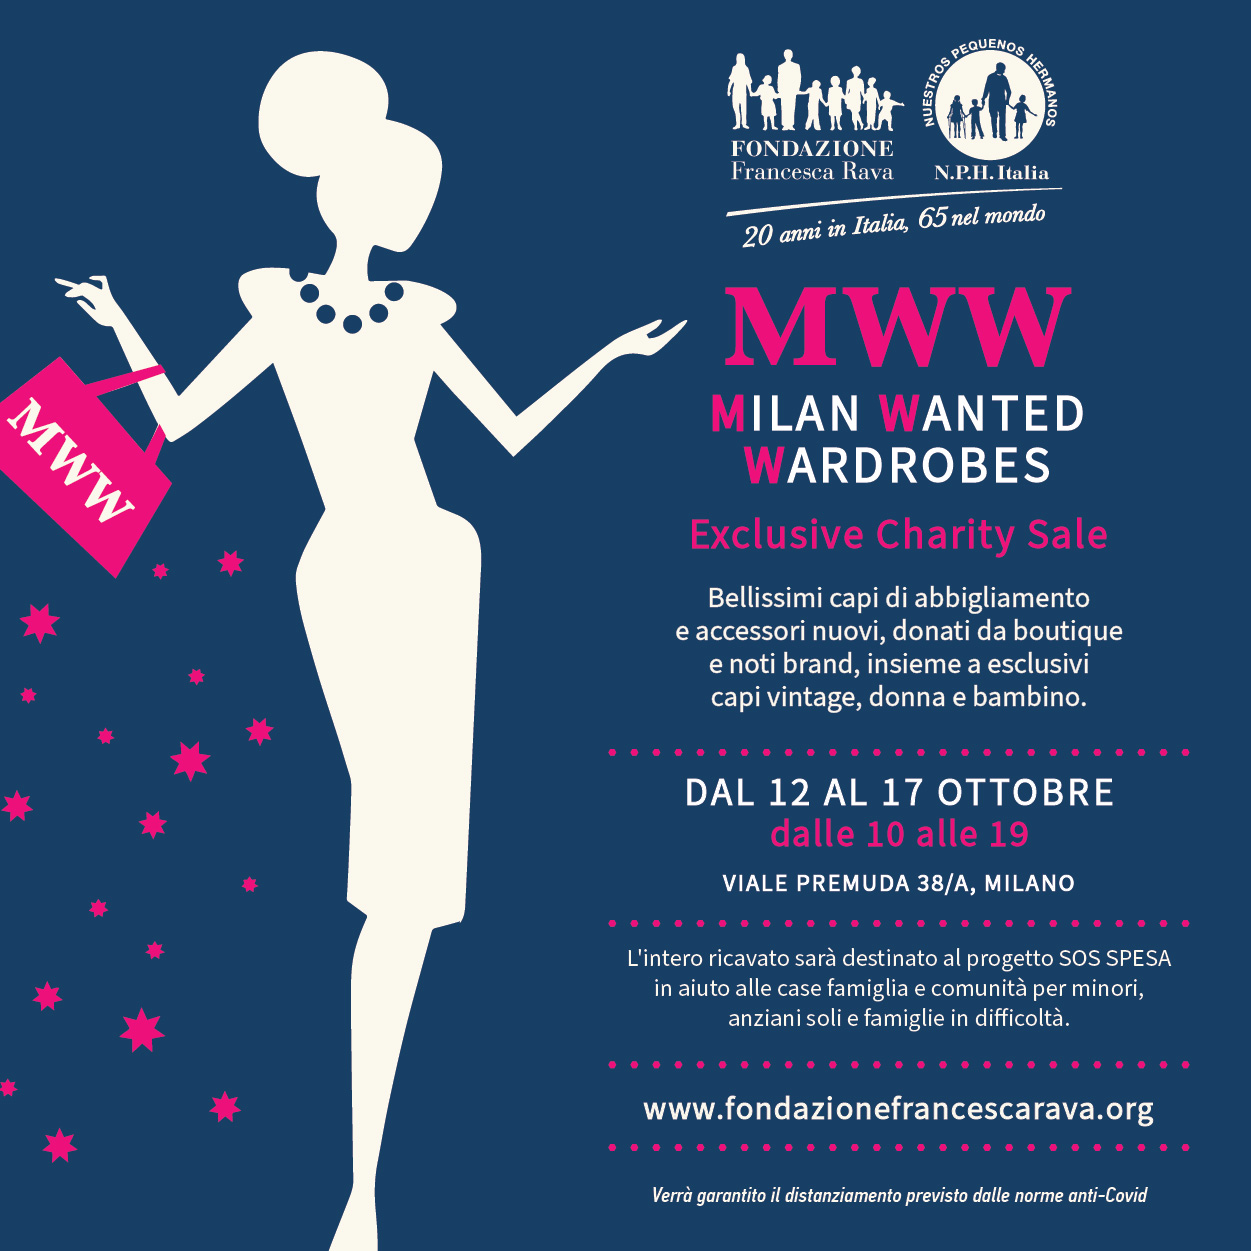 Milan Wanted Wardrobes torna per una nuova edizione! Dal 12 al 17 ottobre, a favore del progetto SOS Spesa.